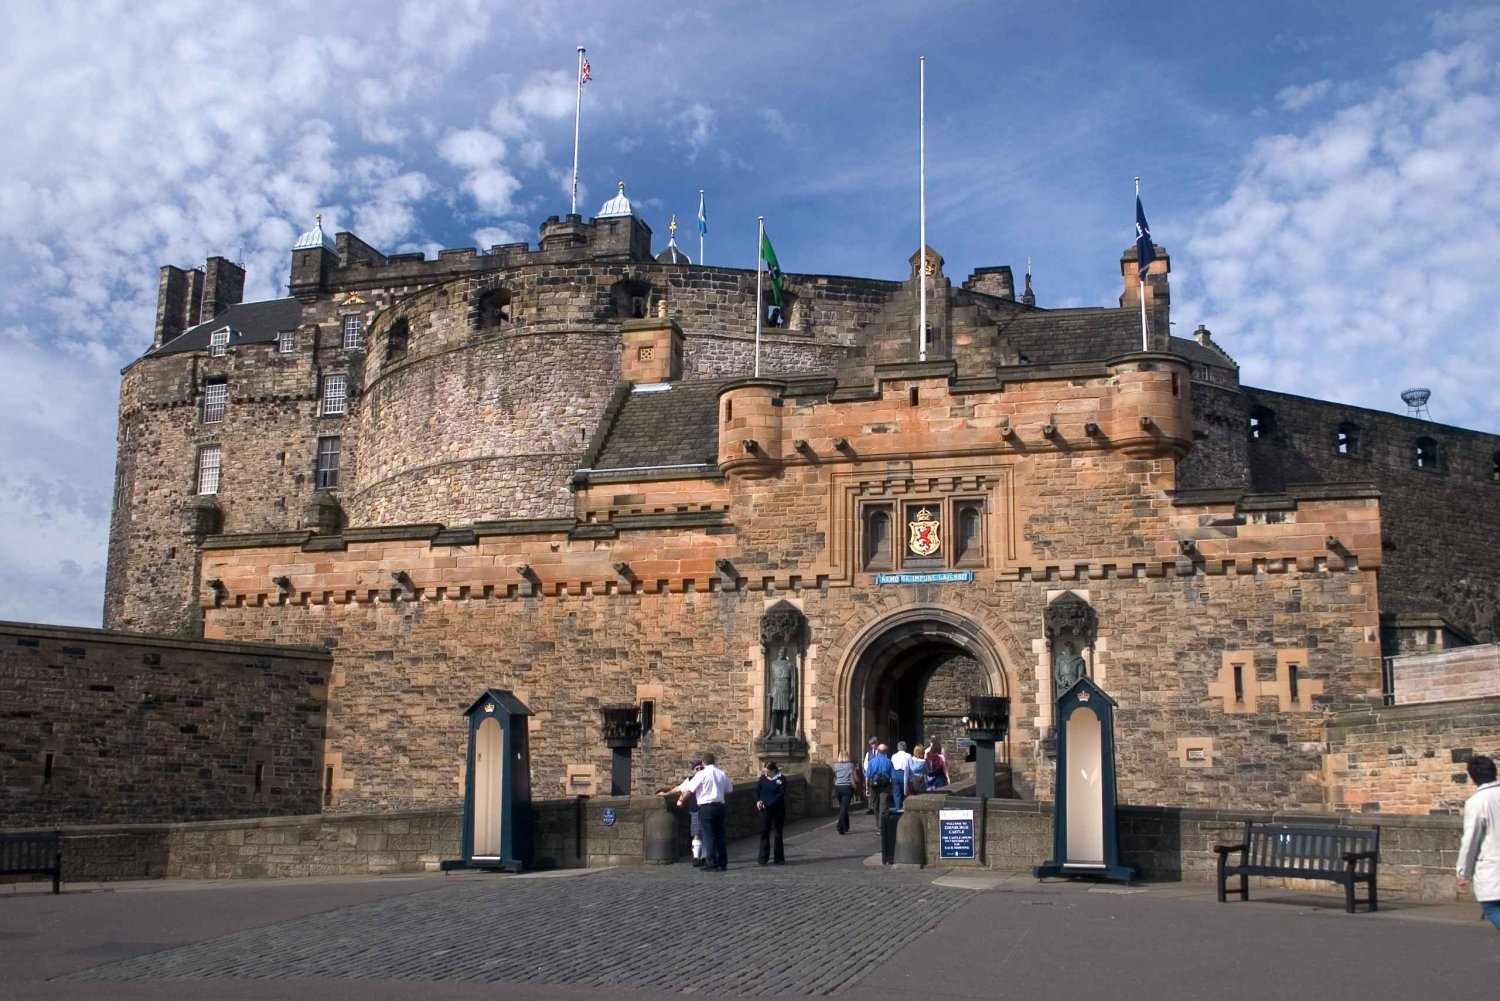 Château d'Édimbourg : Visite guidée à pied avec billet d'entrée